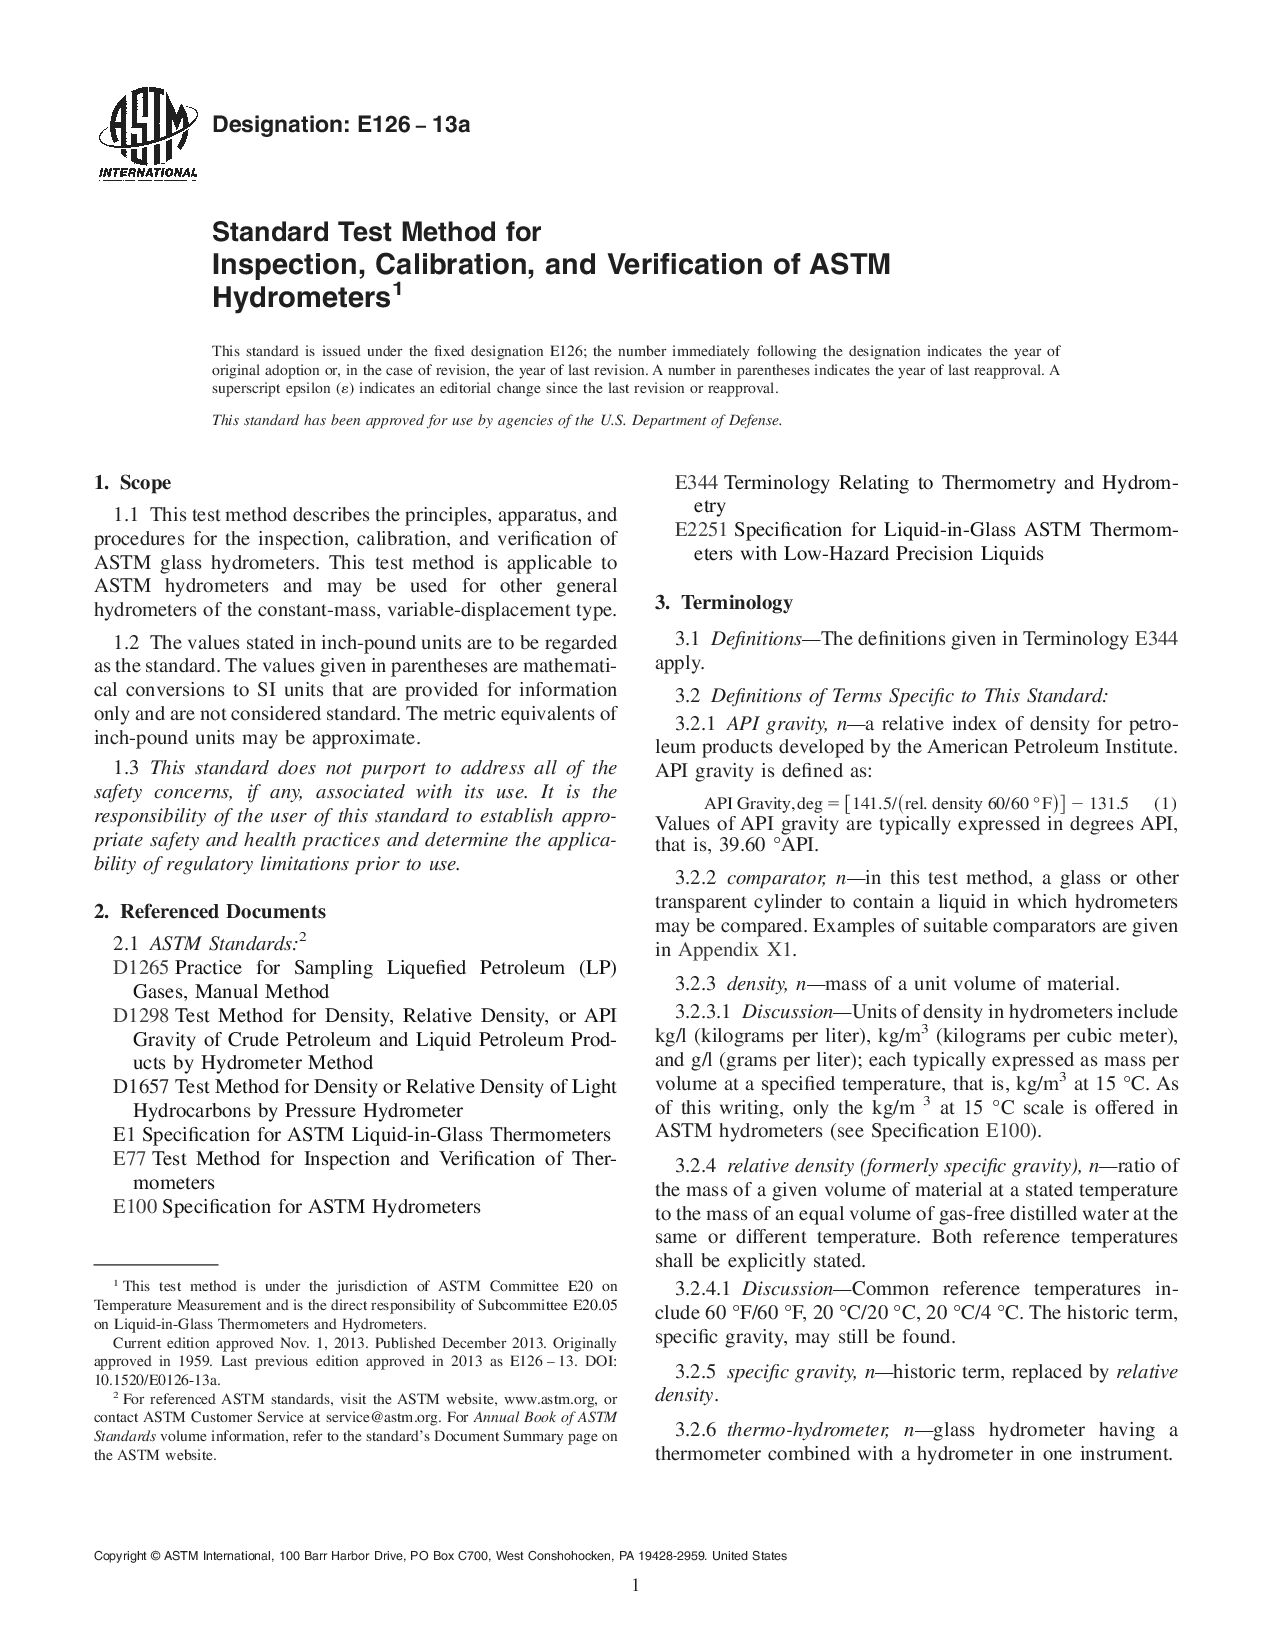 ASTM E126-13a